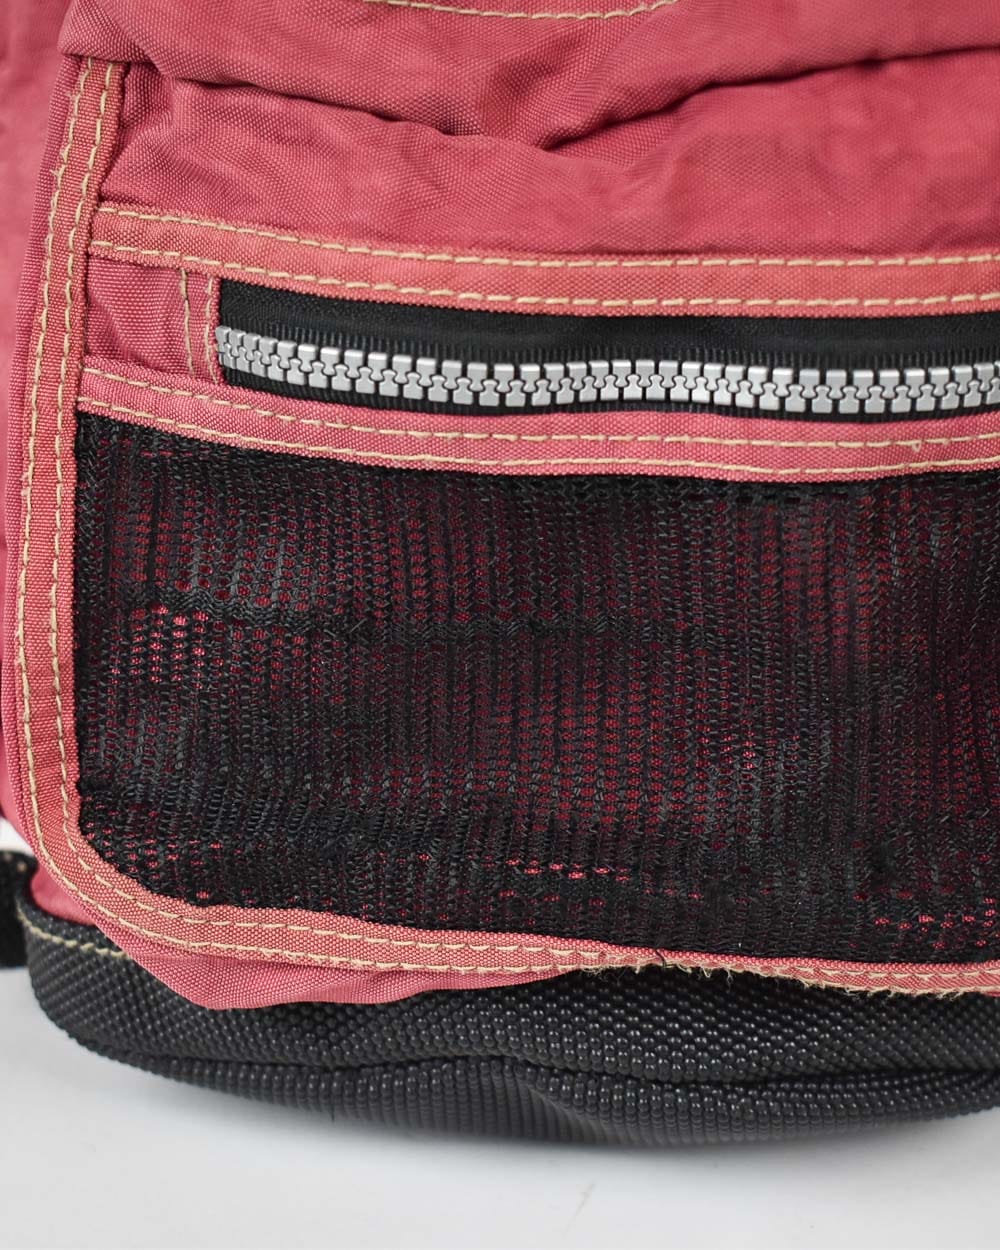  Nike Backpack